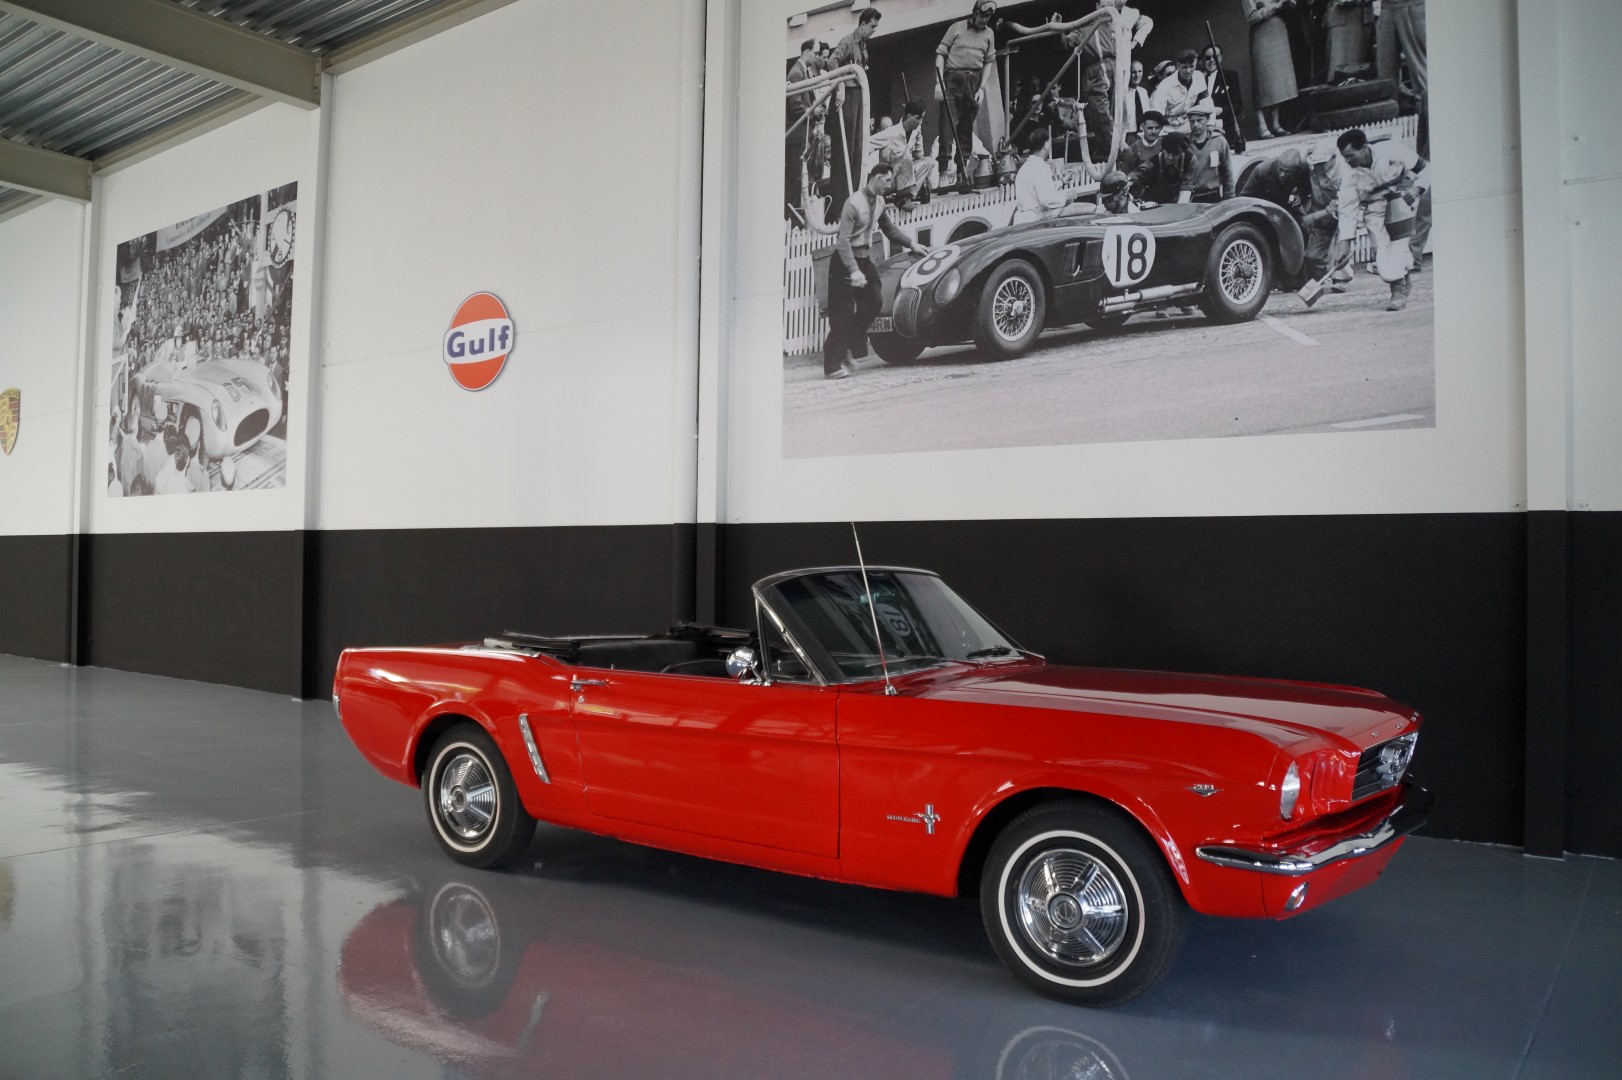 Koop een Ford Mustang   bij Legendary Classics 